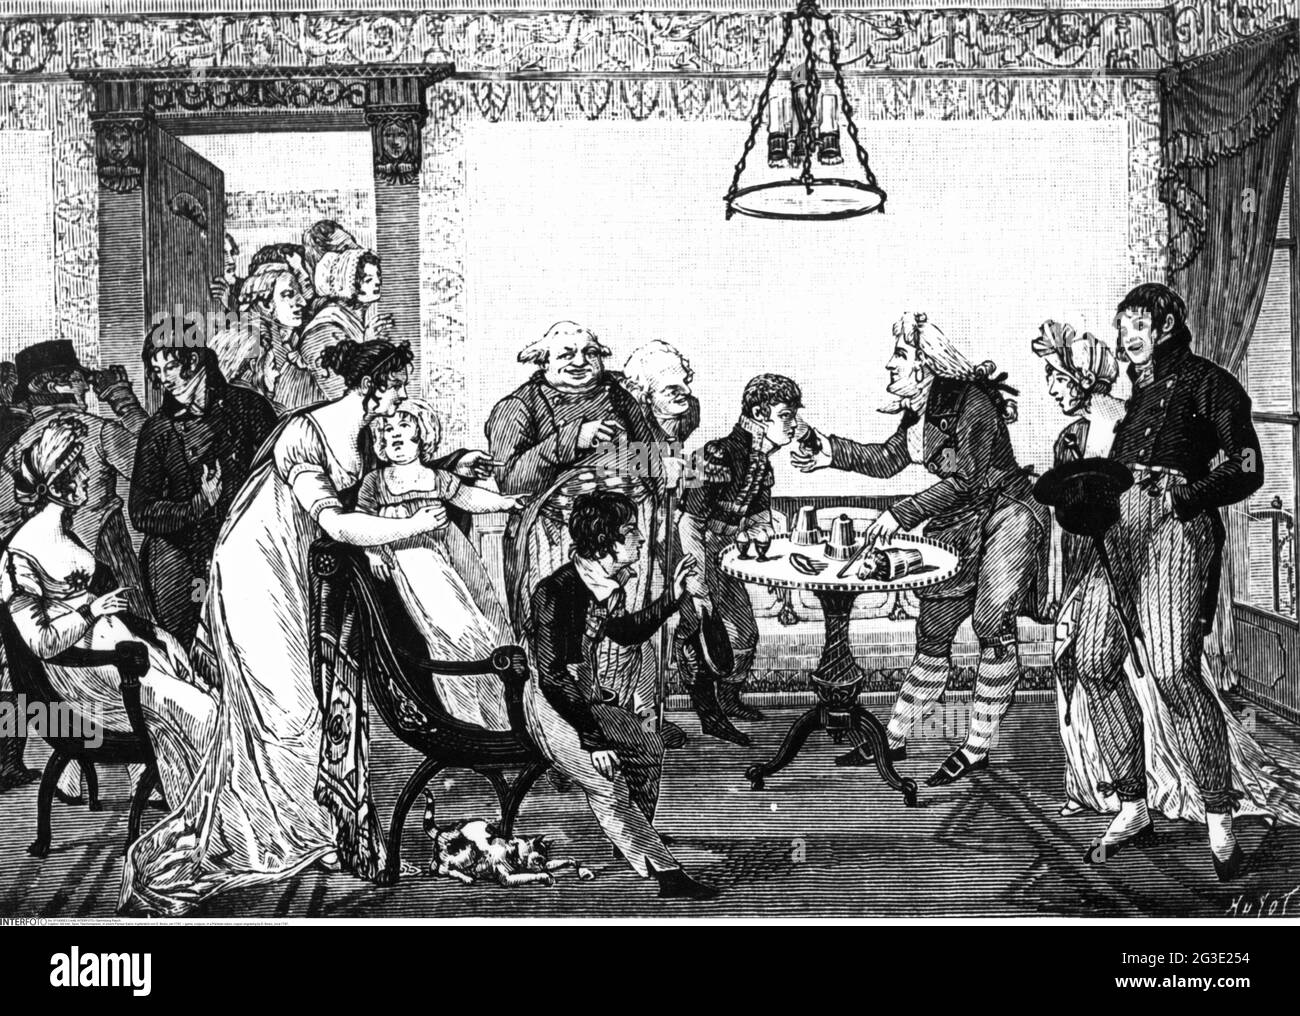 Jeu, conjurer, dans un salon parisien, gravure en cuivre par D. Bosio, vers 1797, LE DROIT D'AUTEUR DE L'ARTISTE N'A PAS À ÊTRE AUTORISÉ Banque D'Images